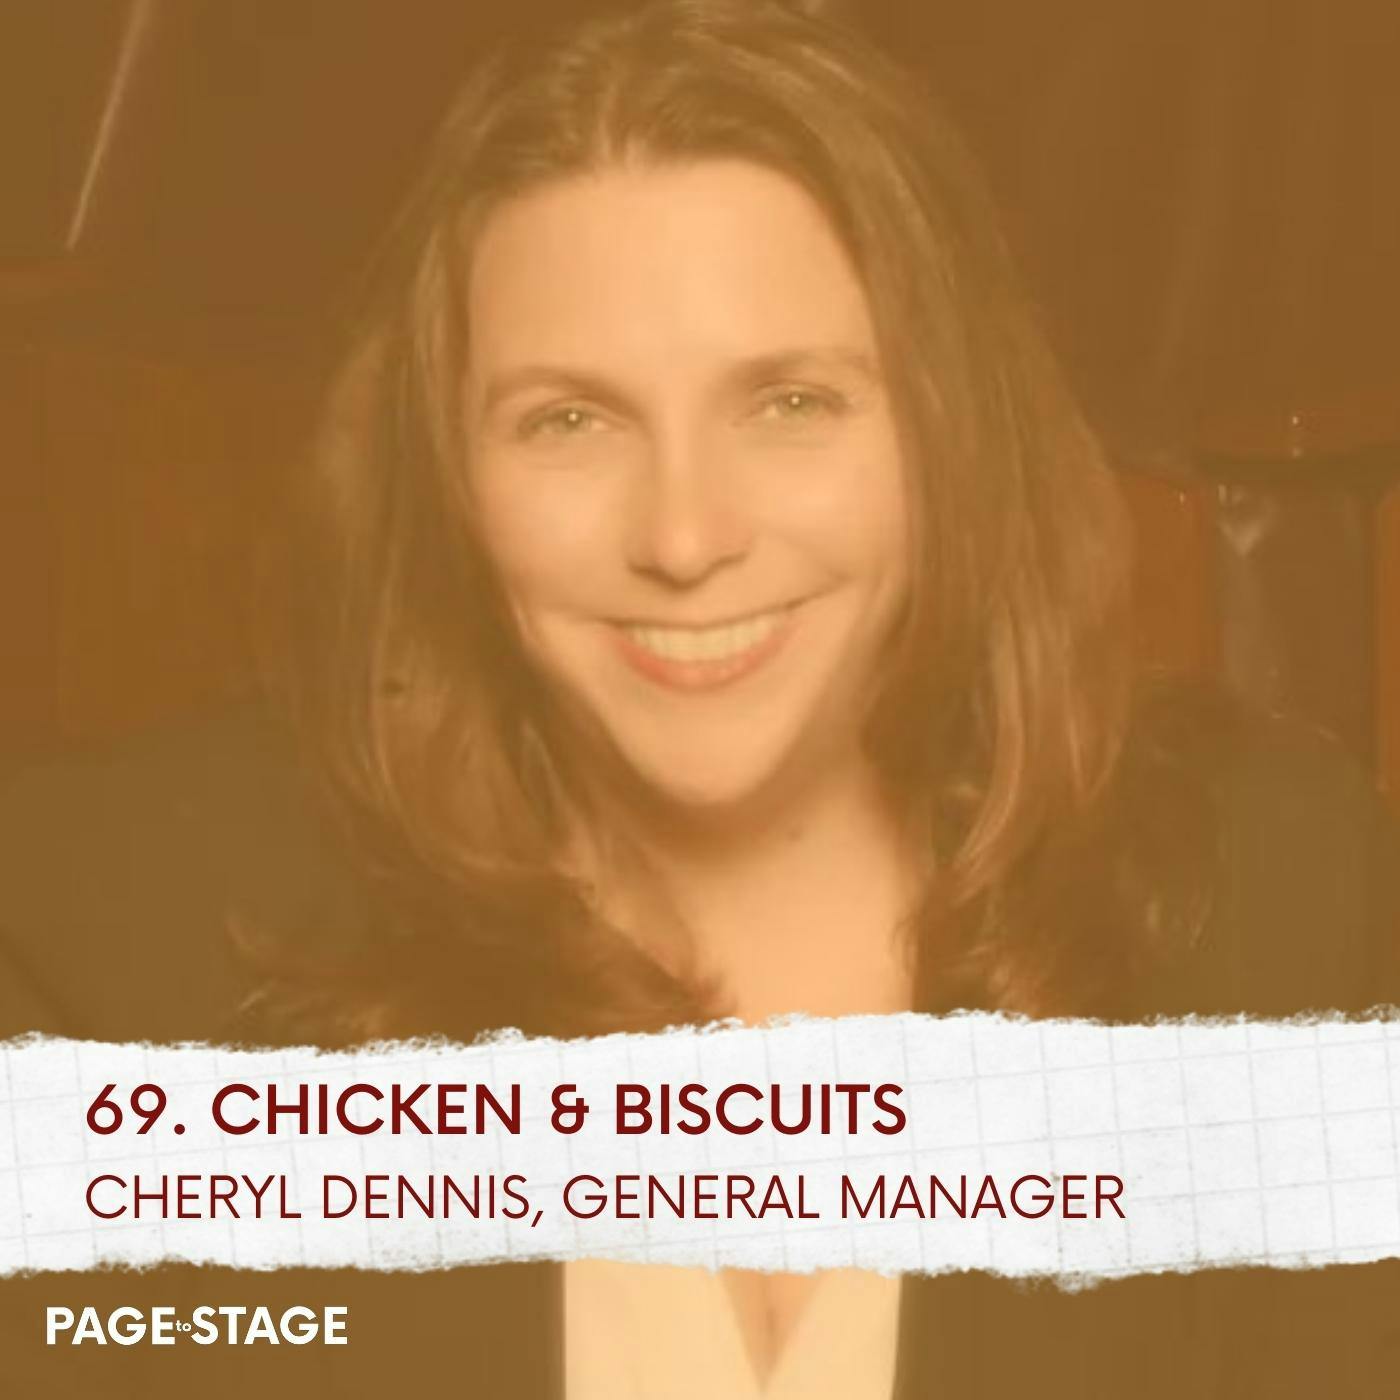 69 - Chicken & Biscuits: Cheryl Dennis, General Manager (Part 2)